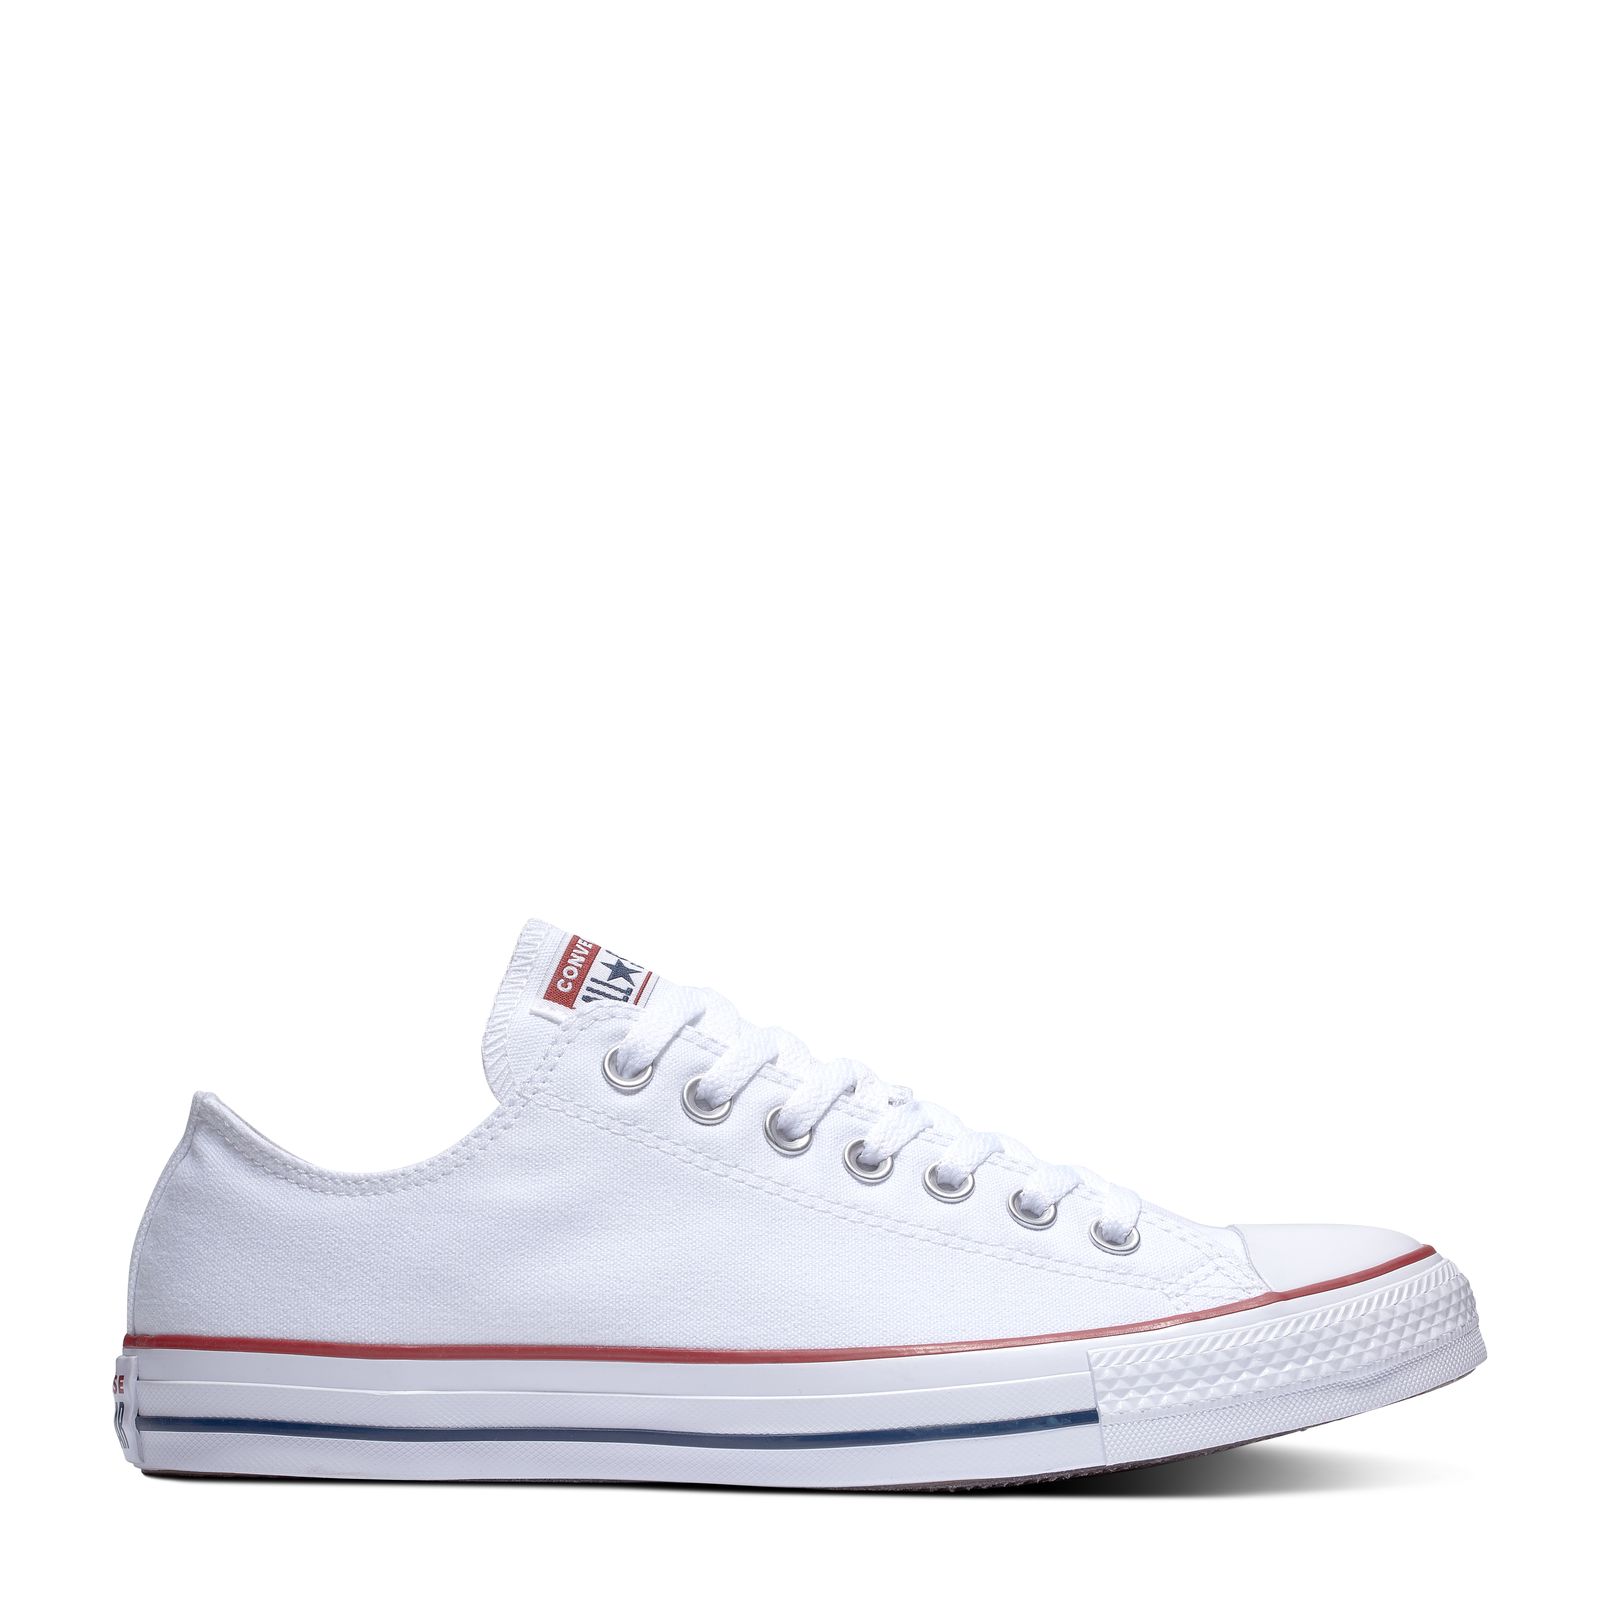 buy converse sneakers online